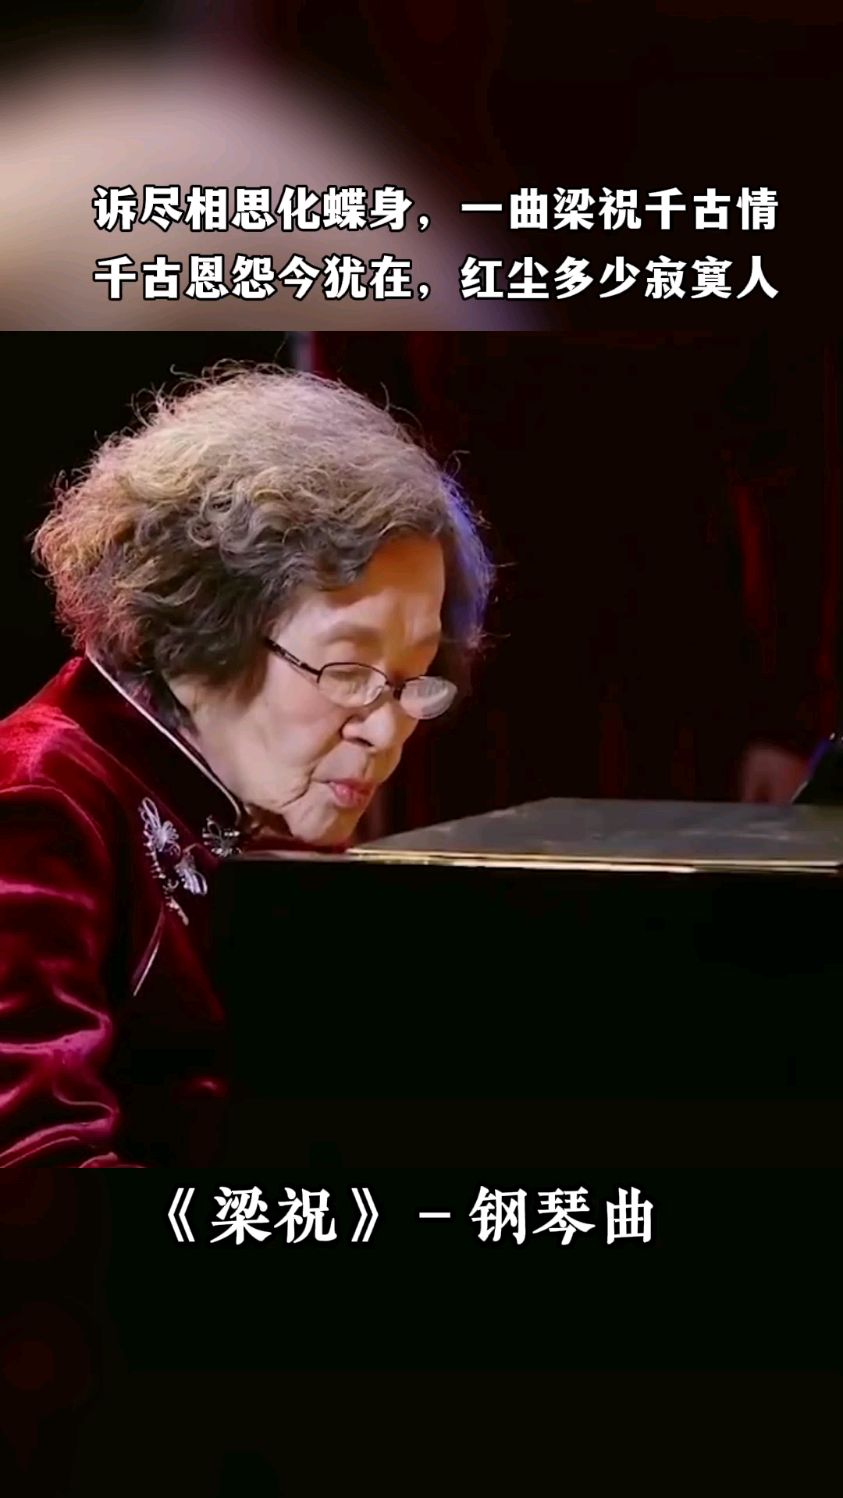 一首梁祝成绝响人间再无巫漪丽致敬中国第一代钢琴大师巫漪丽先生梁祝